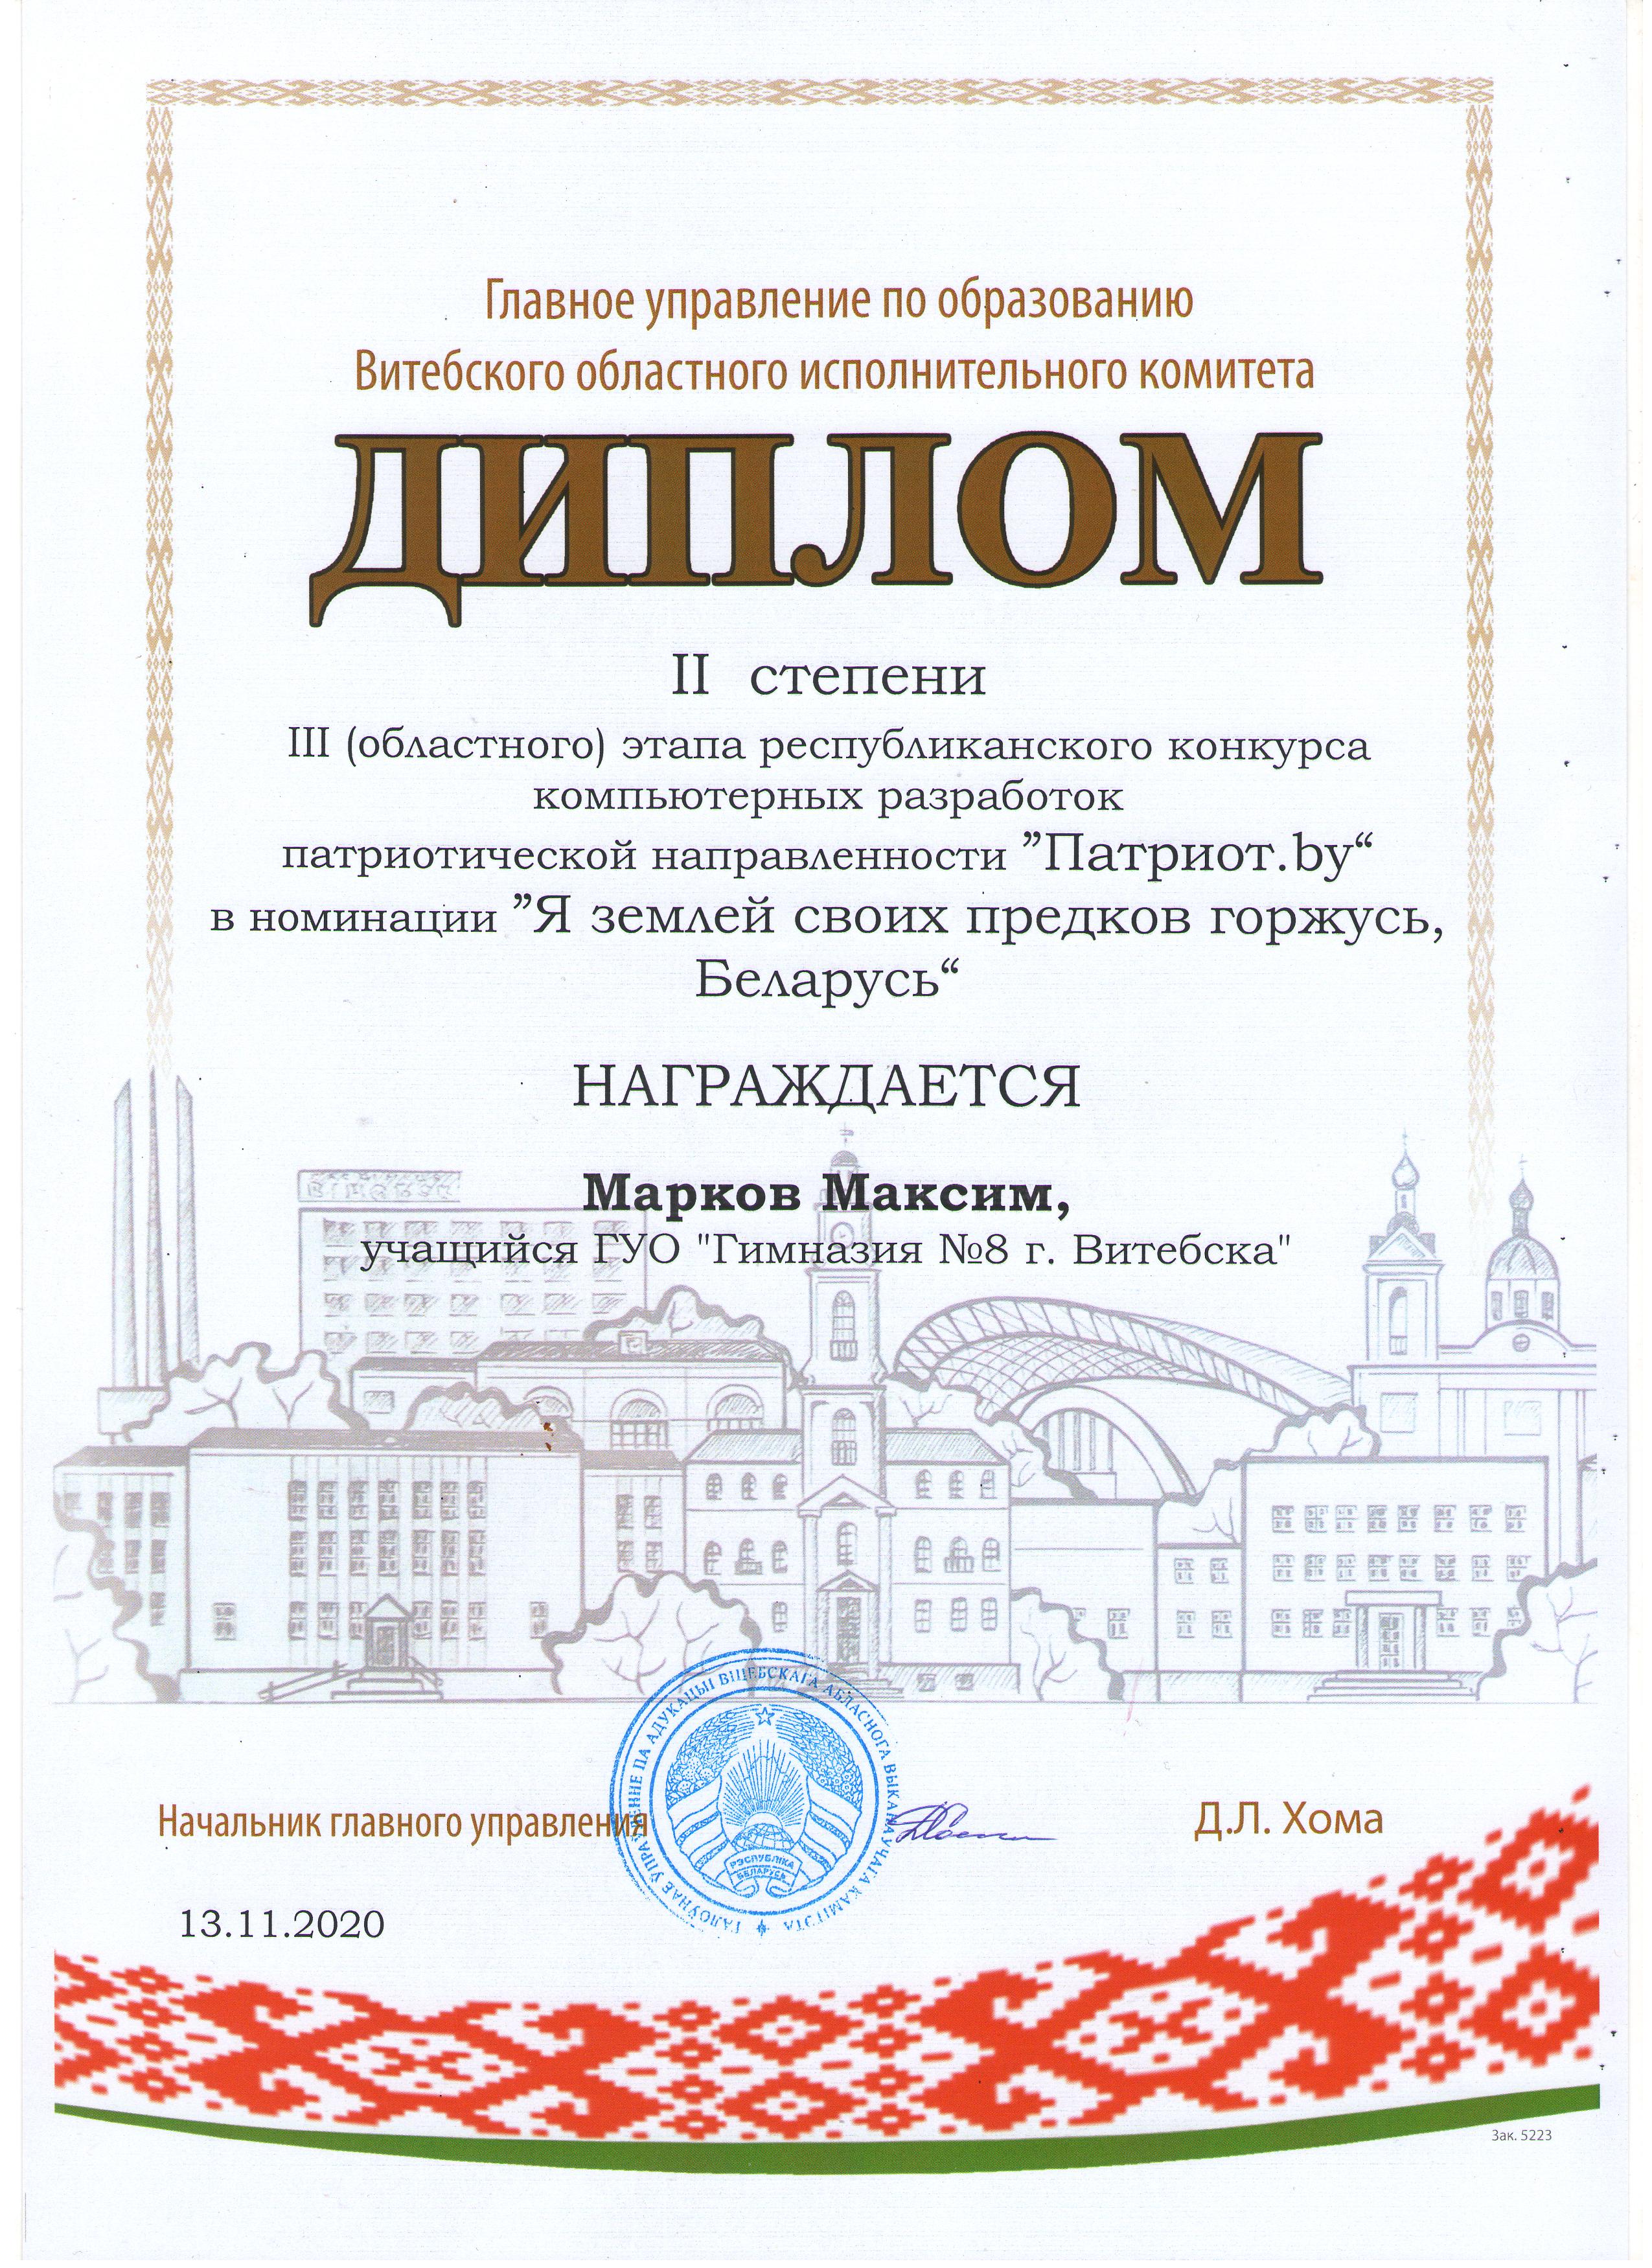 Diplom Markov Patriot obl 2020